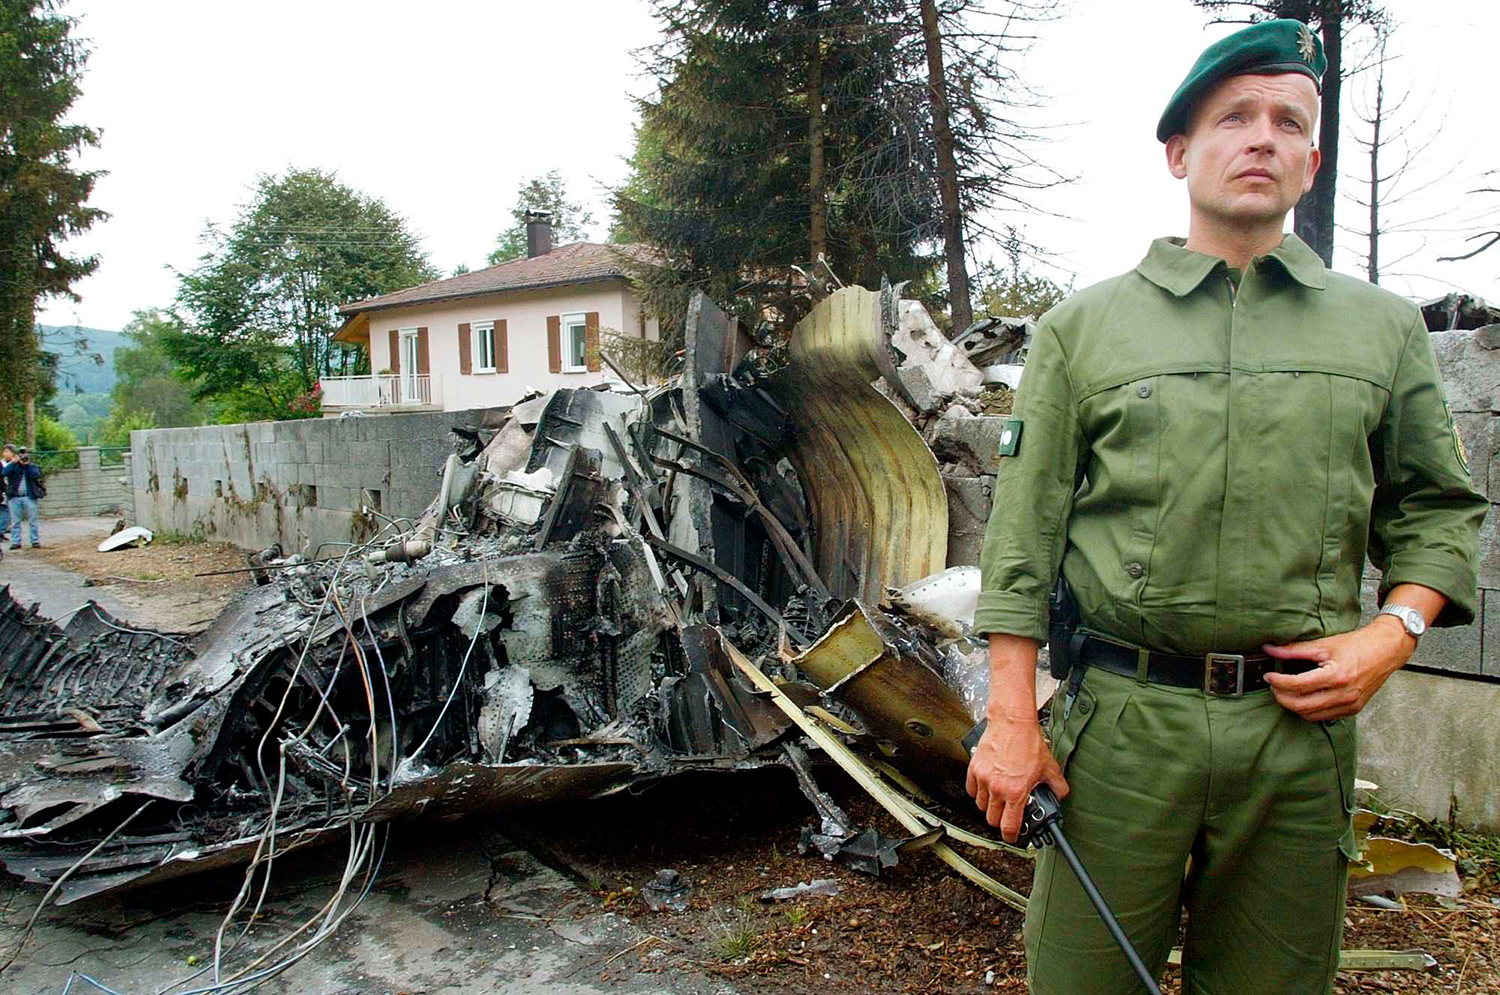 2 июля 2002 года авиакатастрофа фото